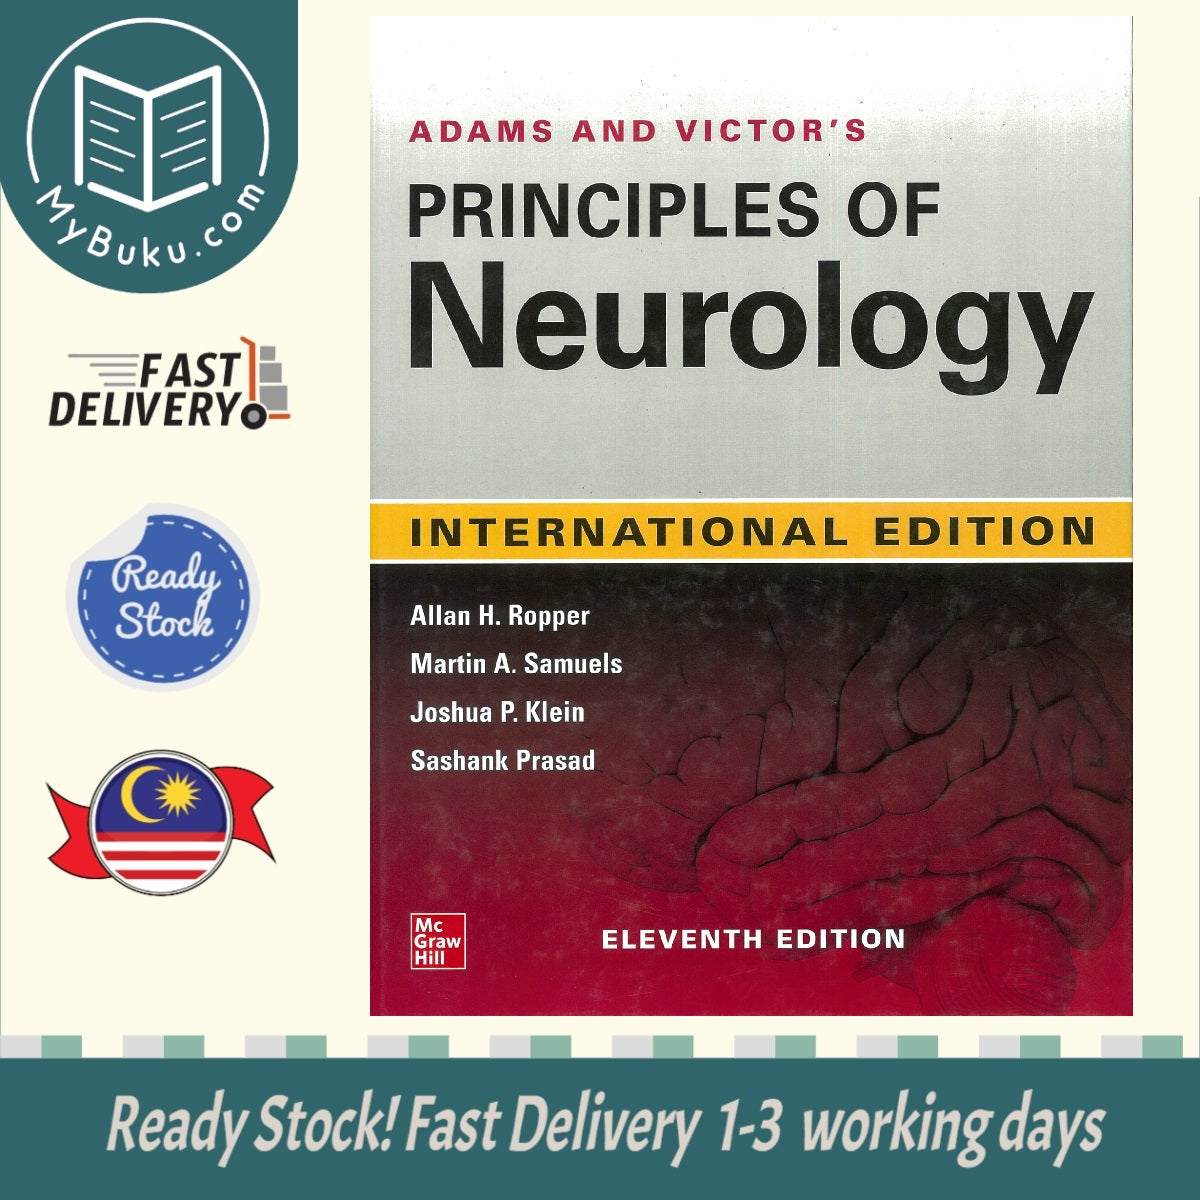 ADAM N VICTOR'S PRINCIPLES OF NEUROLOGY (IE) - Ropper - 9781260458824 - MGH